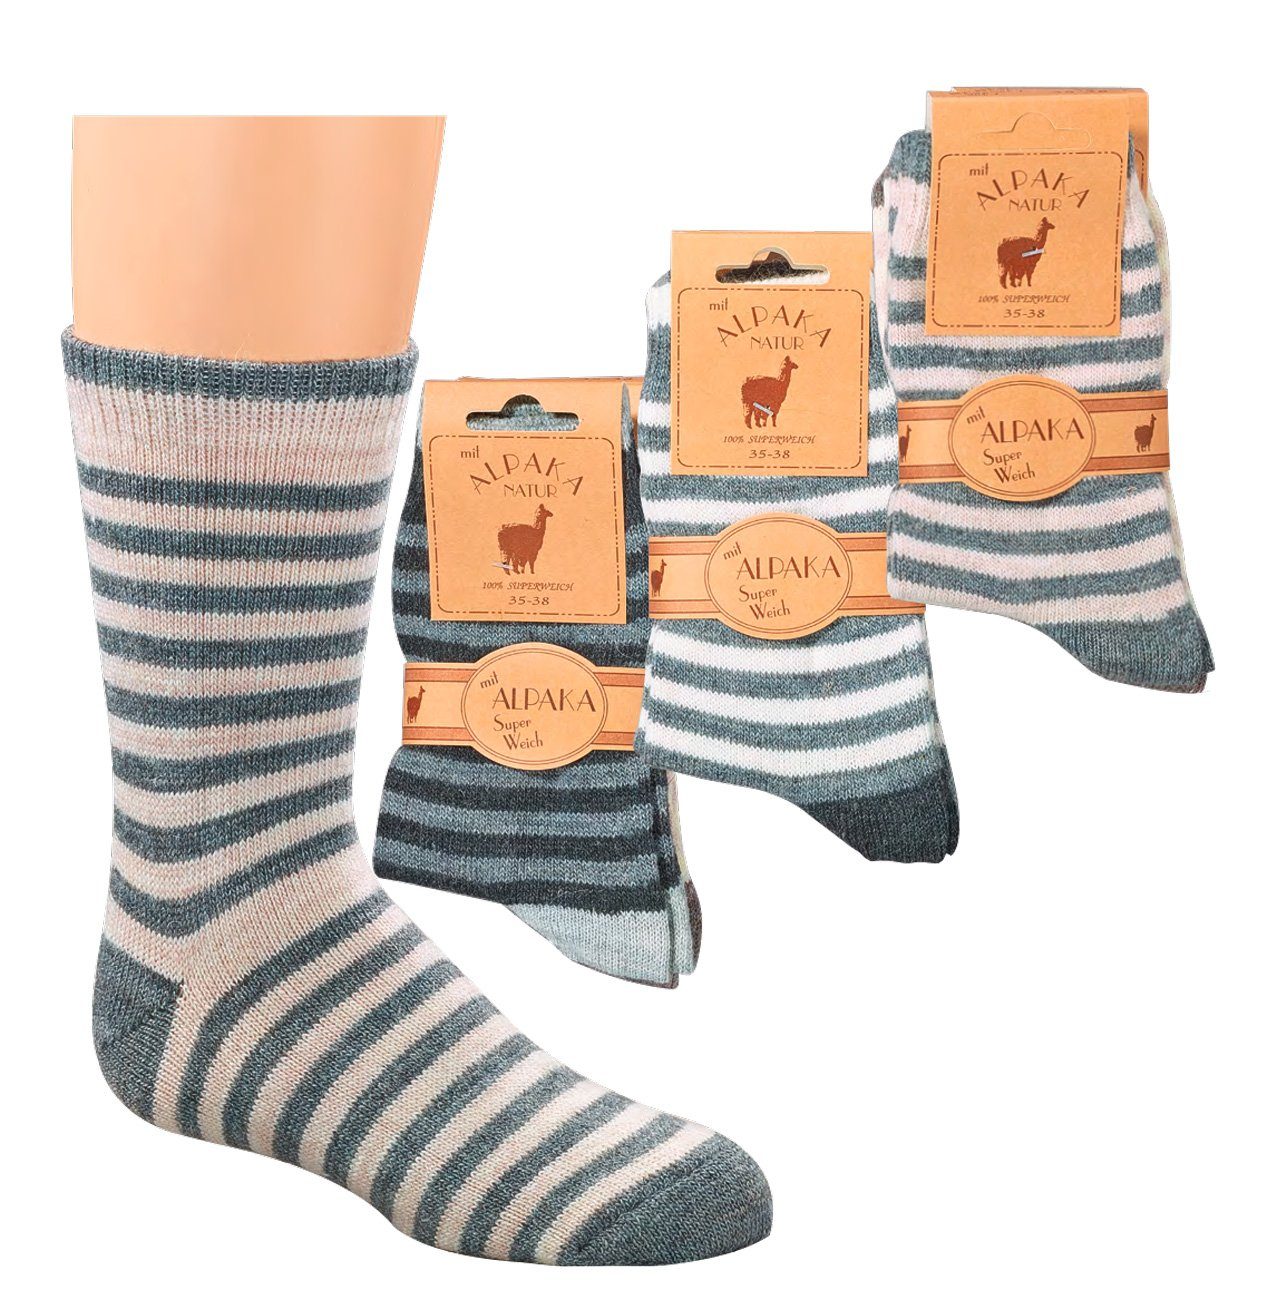 Wowerat Socken Socken mit Alpakawolle Wollsocken für Kinder Teenager Damen (2 Paar)